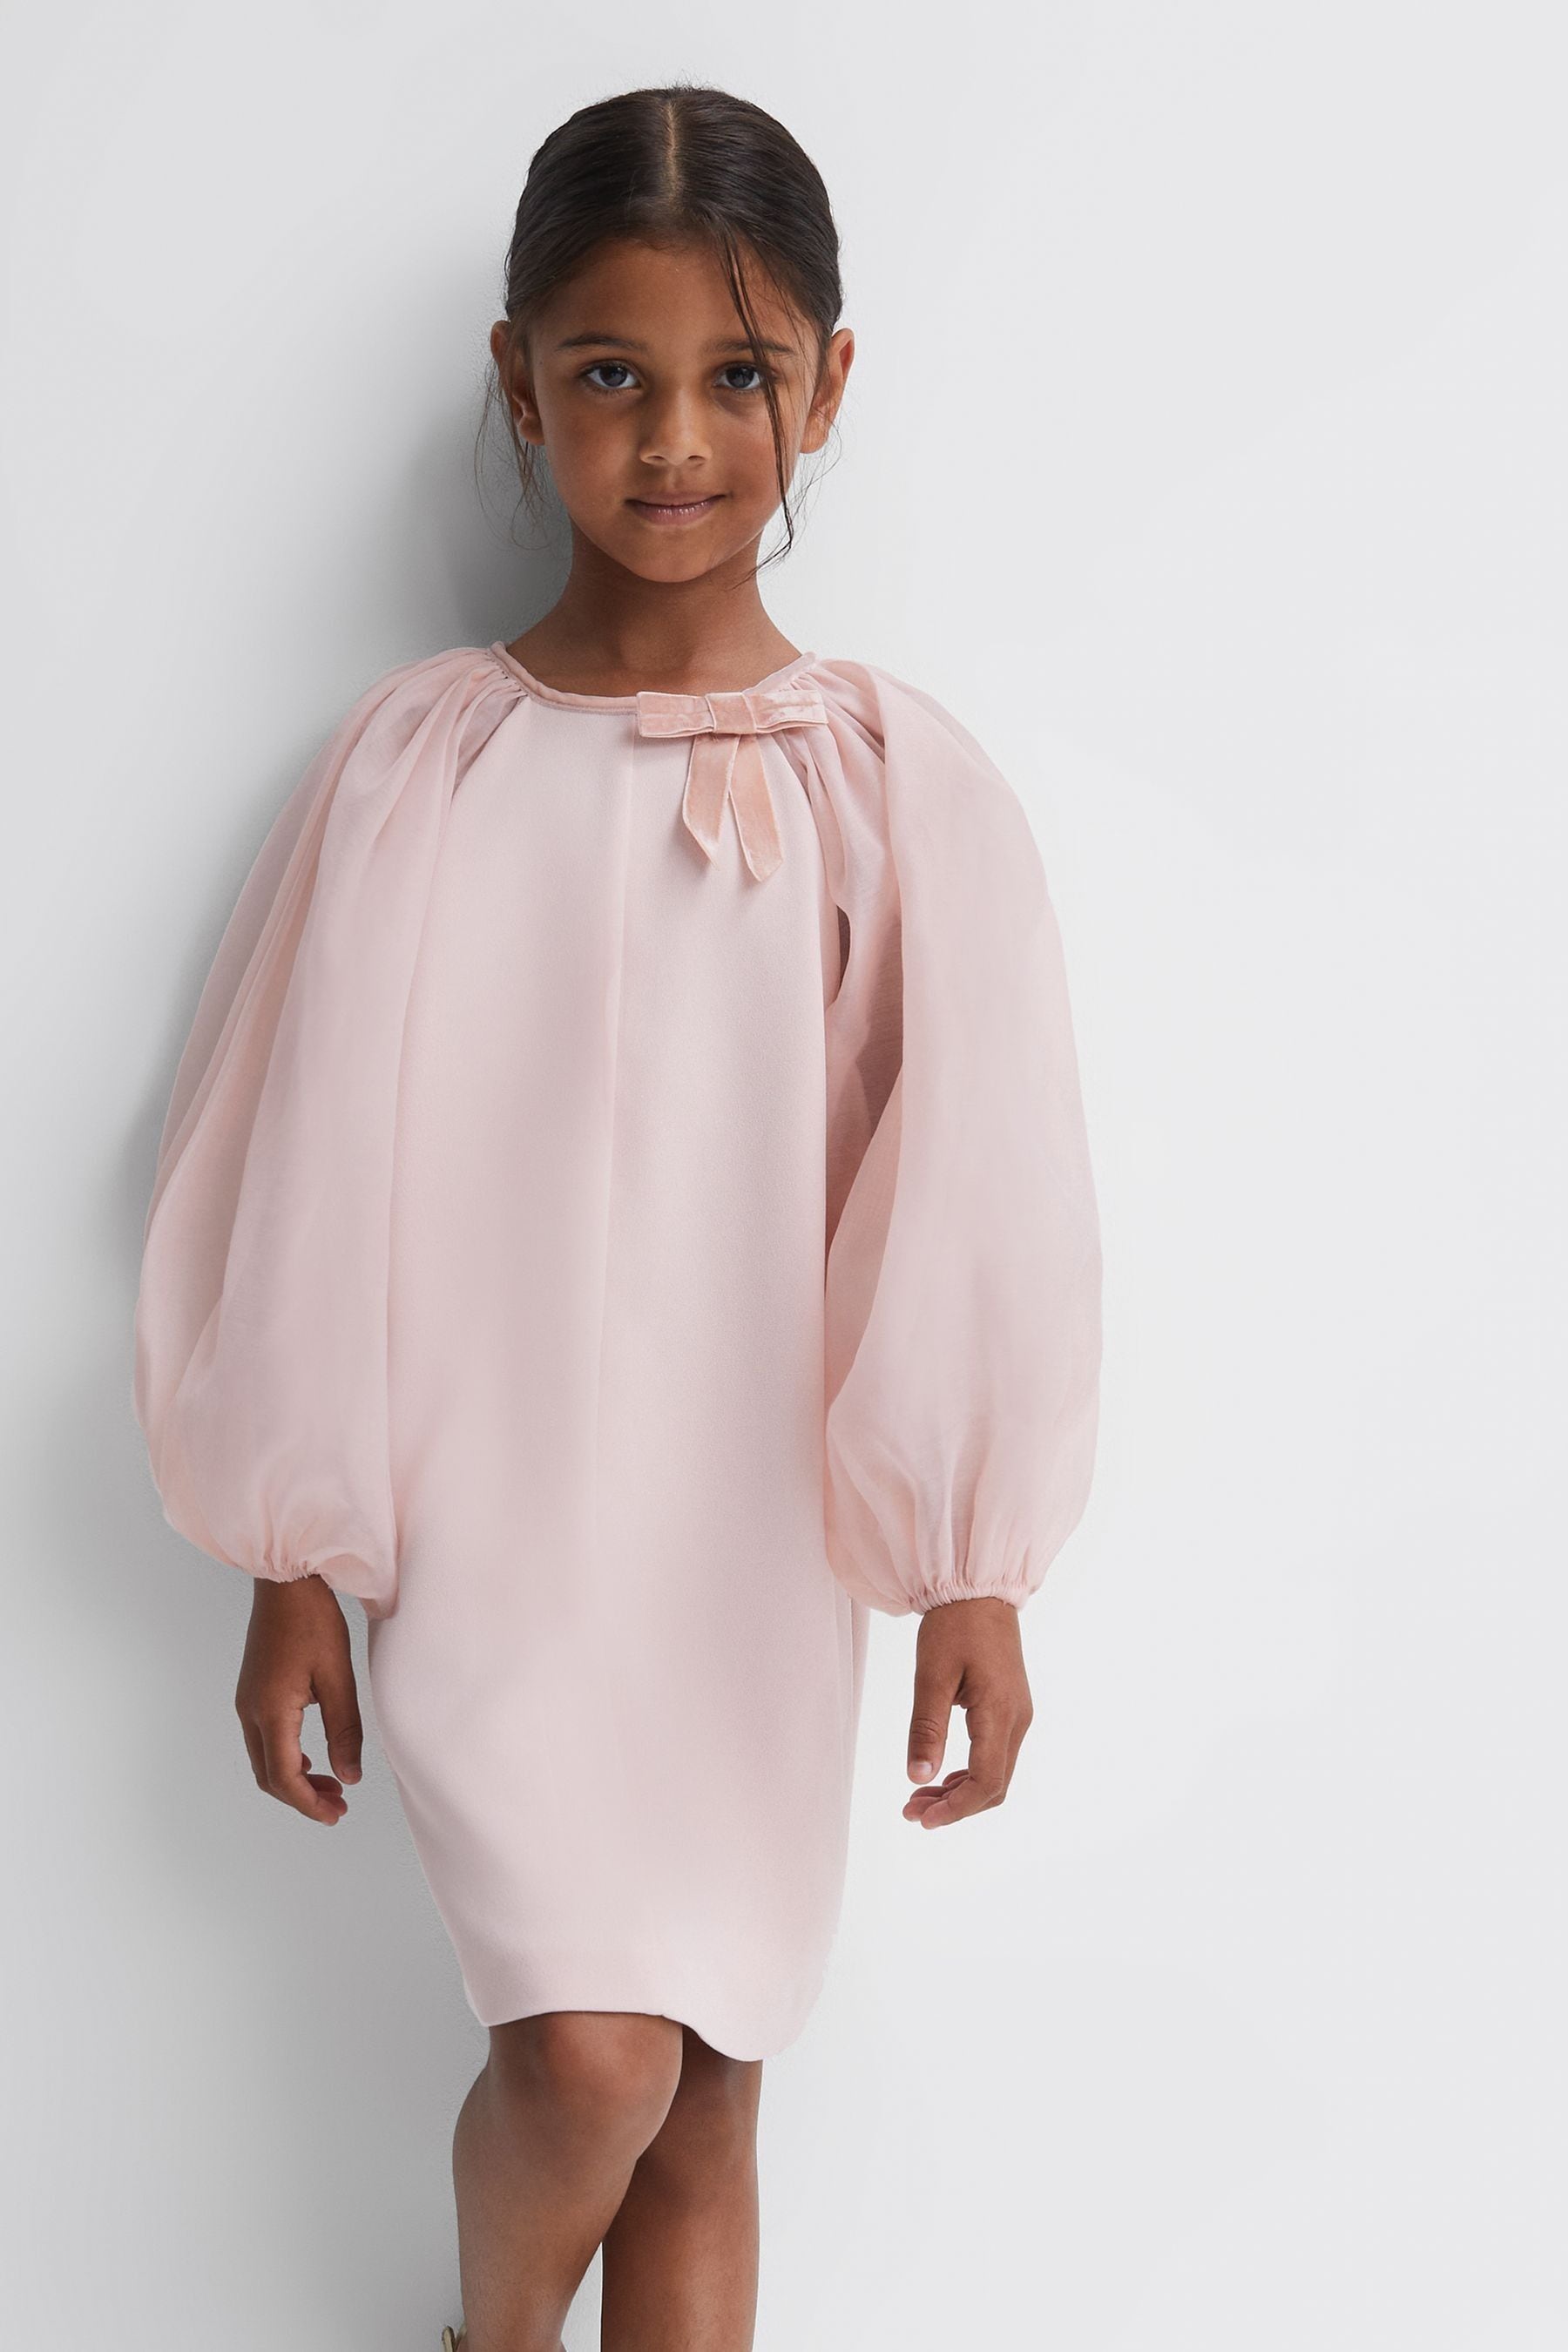 Reiss Kids' Lauren - Pink Senior Blouson Sleeve Bow Dress, Uk 9-10 Yrs